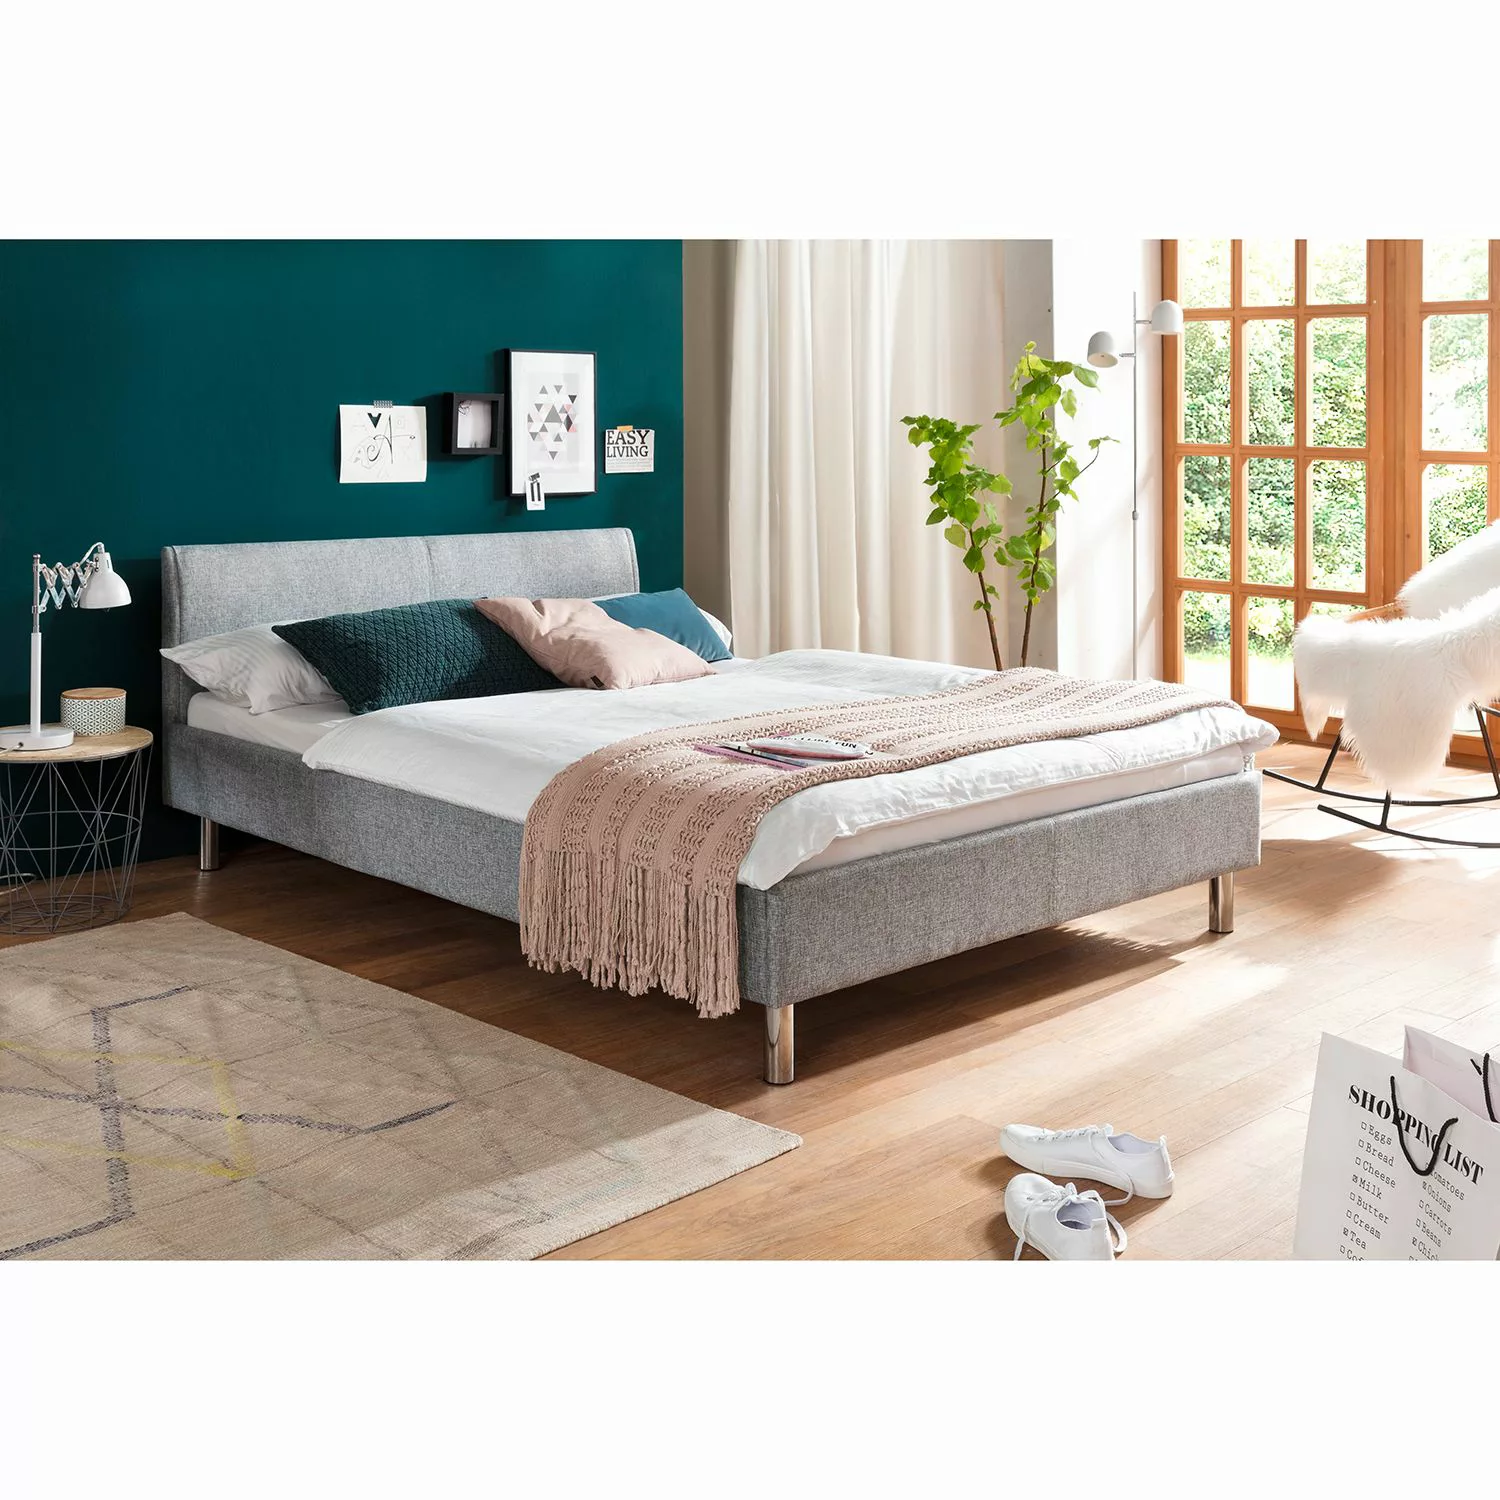 Polsterbett - grau - 146 cm - 76 cm - 205 cm - Betten > Doppelbetten - Möbe günstig online kaufen